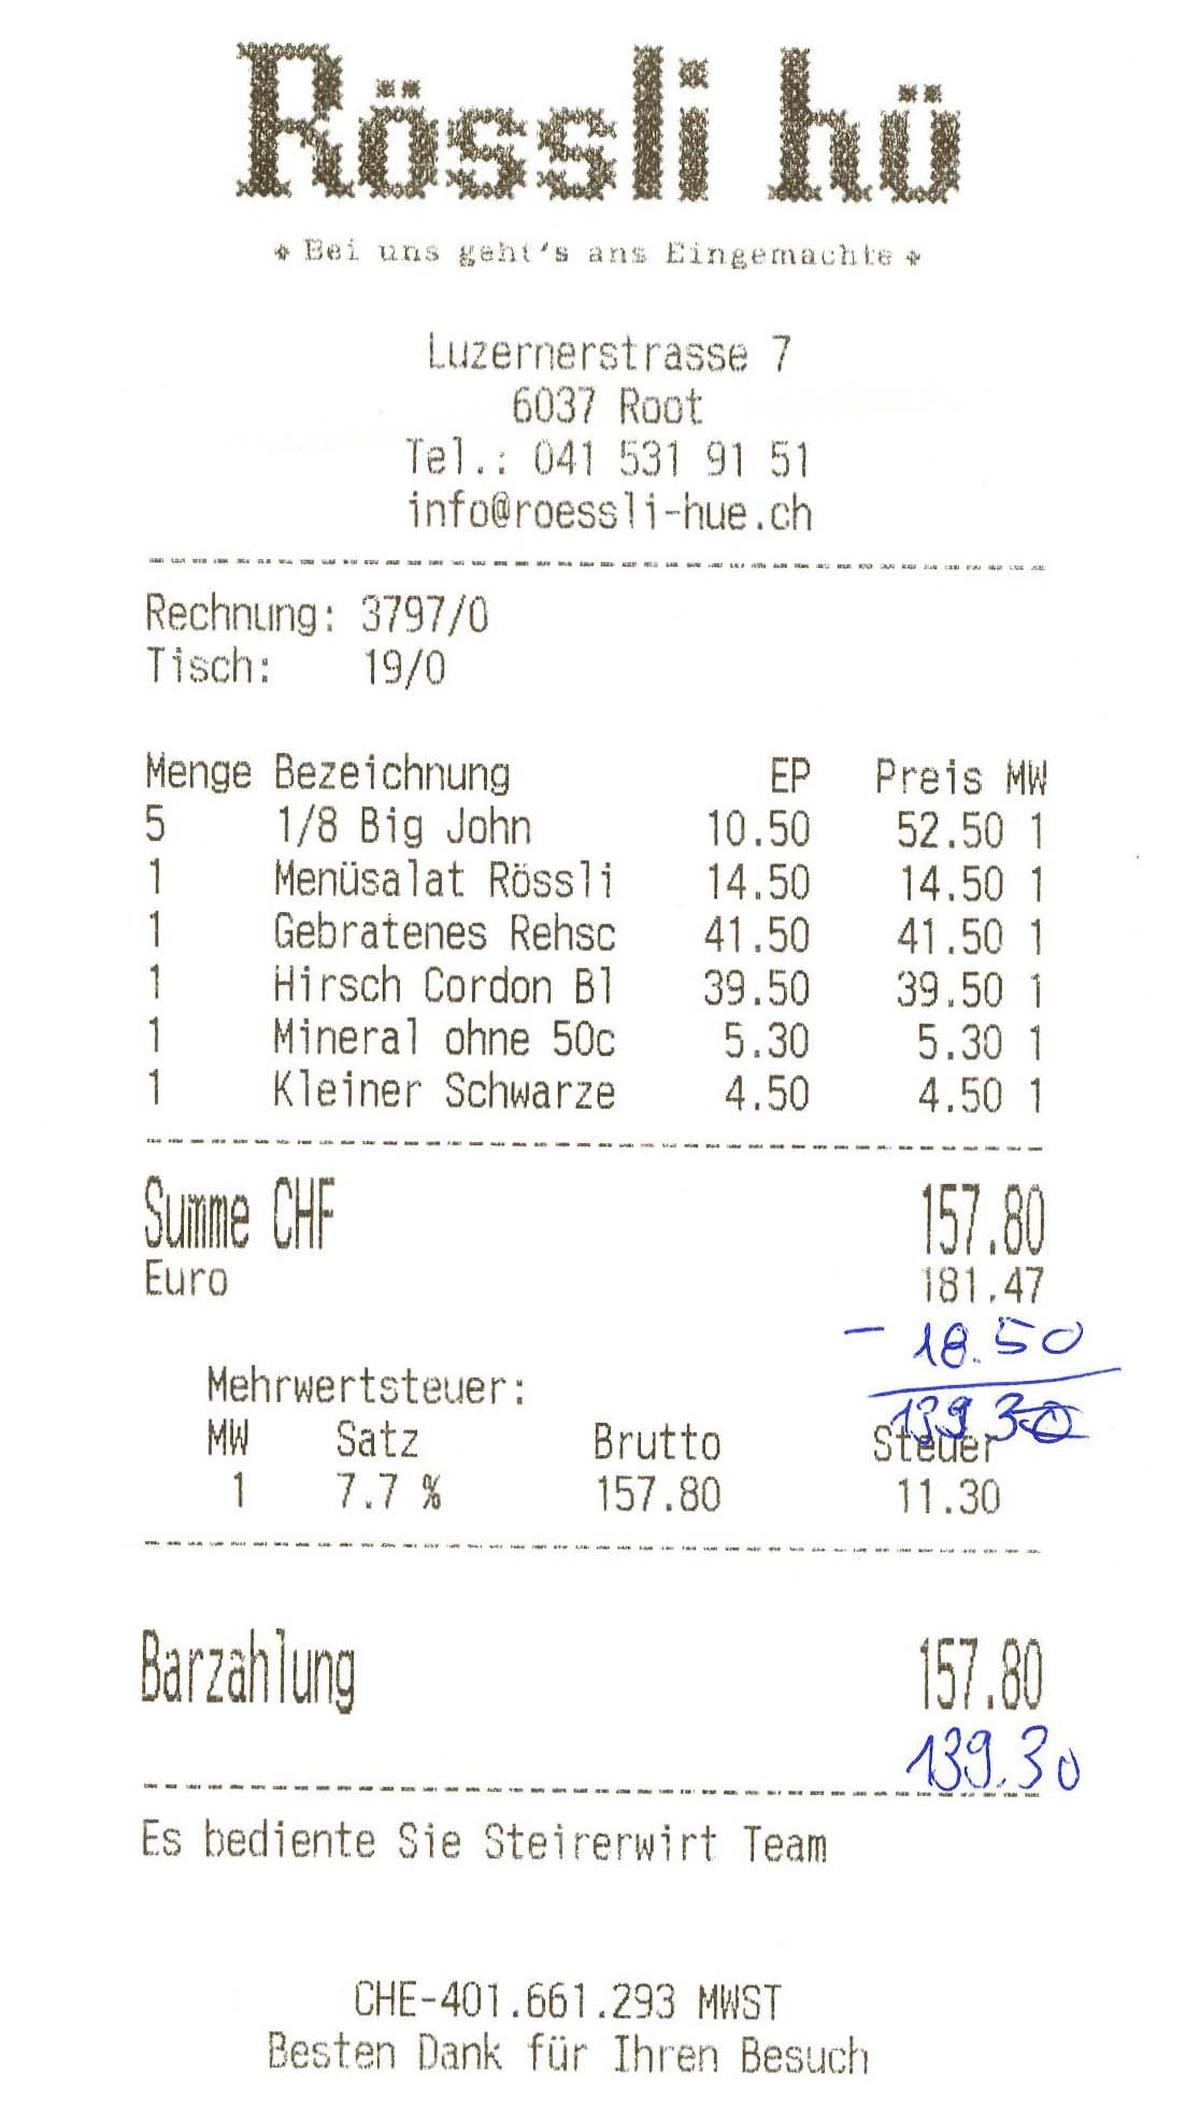 Die Rechnung gibt es auch im «Rössli hü» zuletzt.